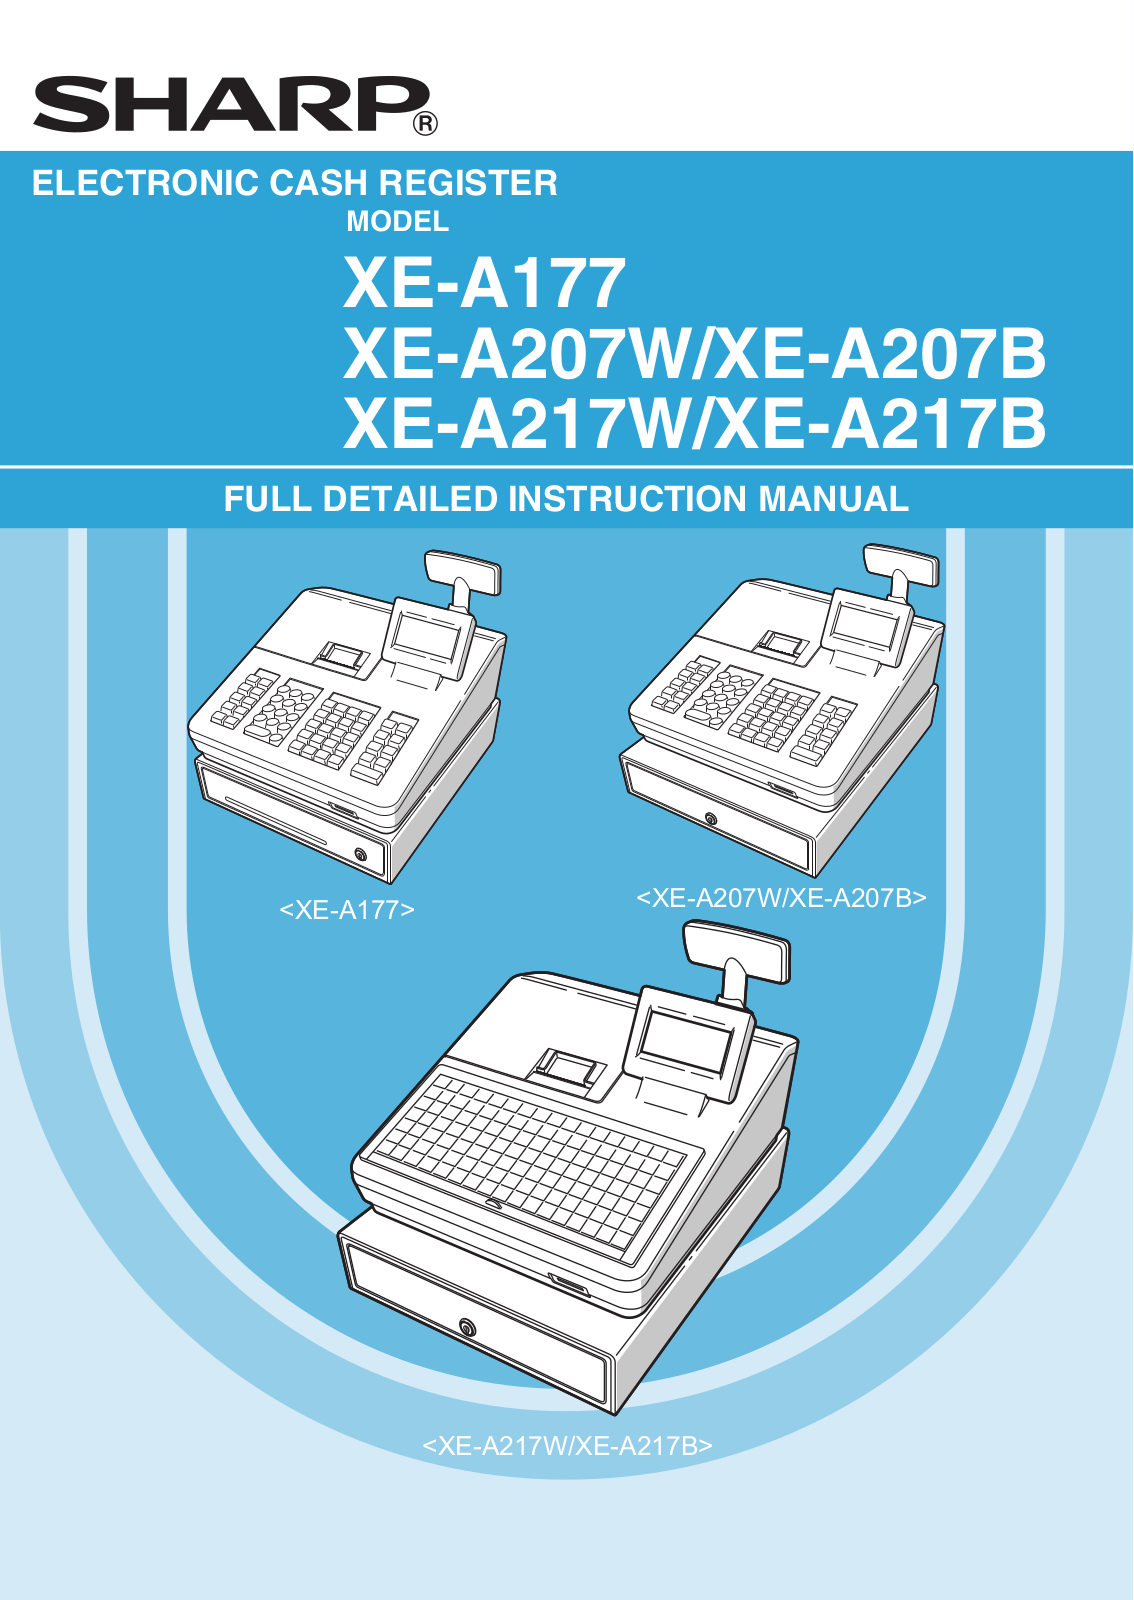 Sharp XE-A177, XE-A207B, XE-A217W, XE-A217B, XE-A207W User Manual